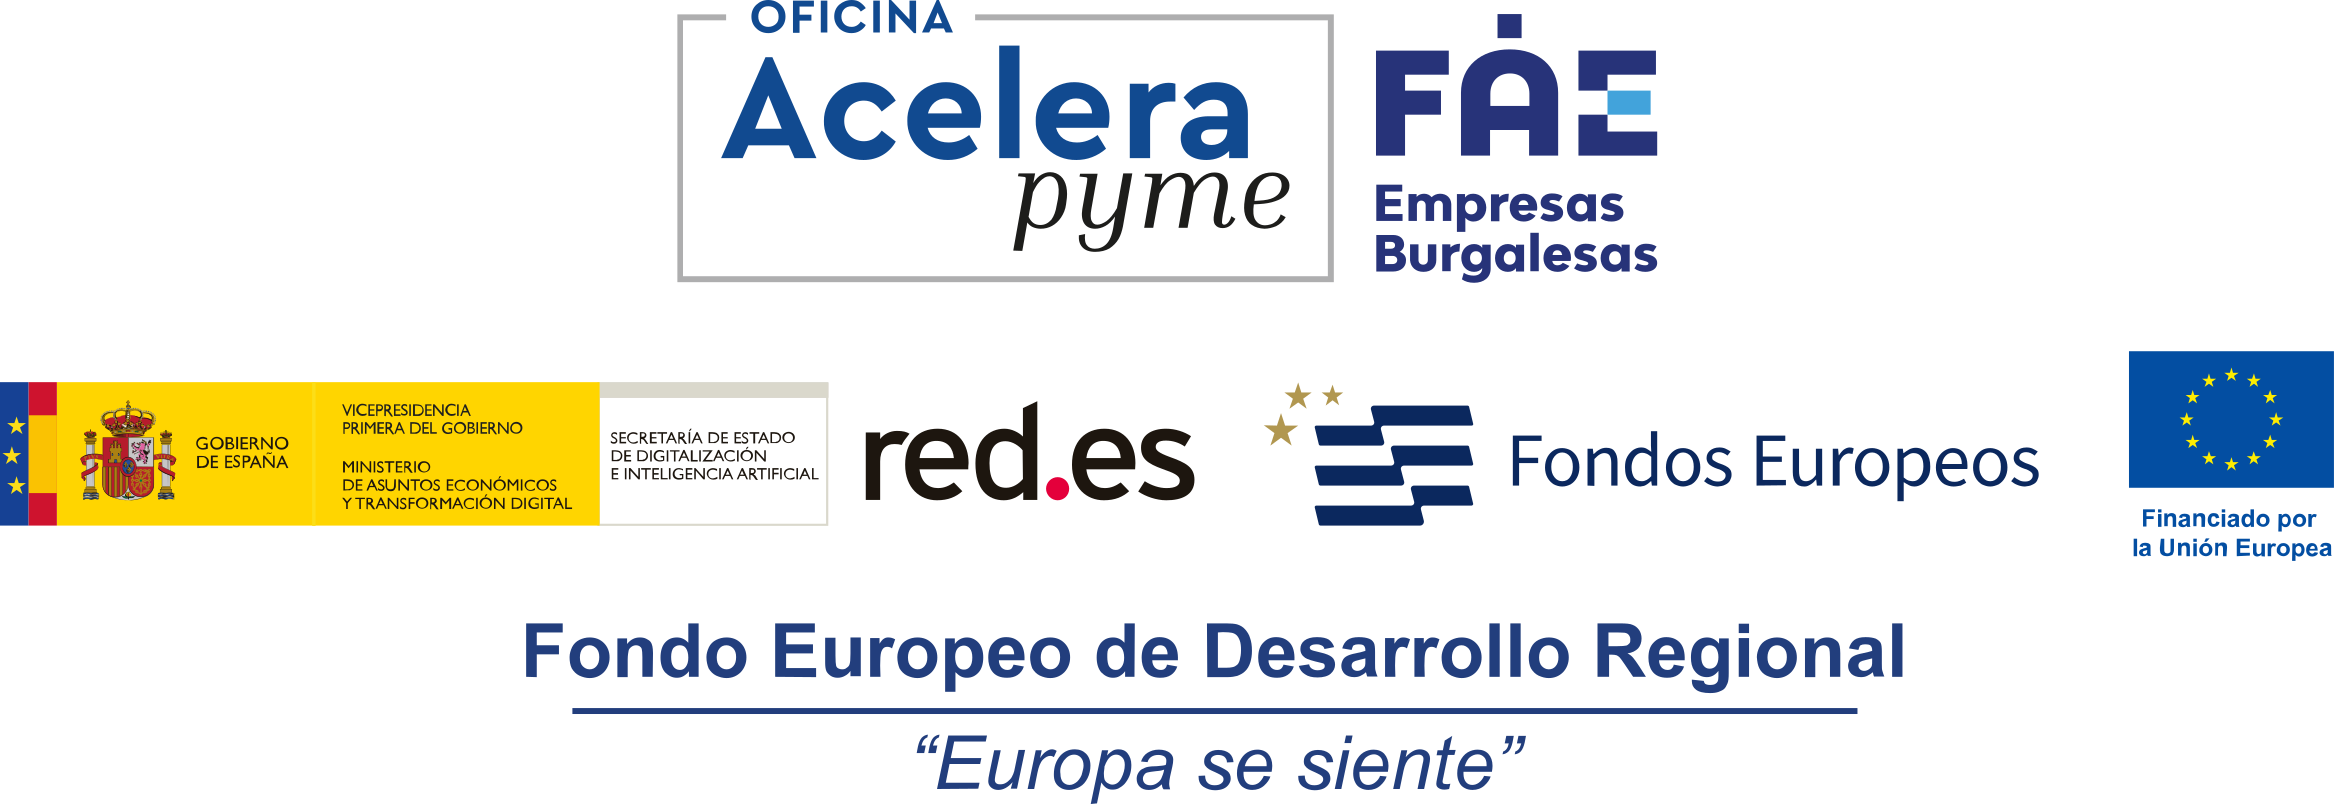 Logos Oficina Acelera Pyme FAE Burgos Redes